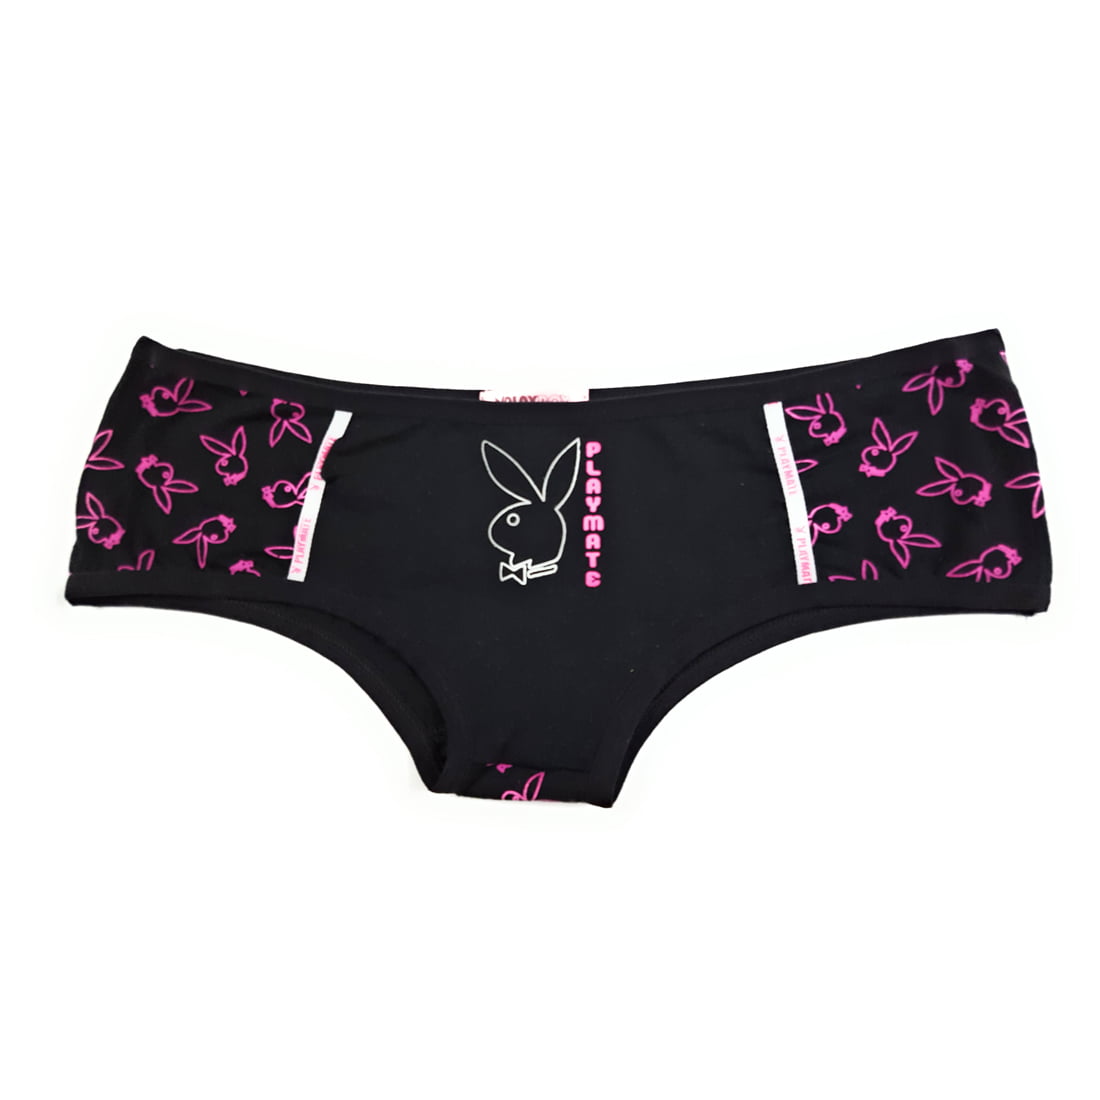 Pink L PLAYBOY Bunny Cotton Boyleg Boyshort Panty Playmate Underwear PLT194 